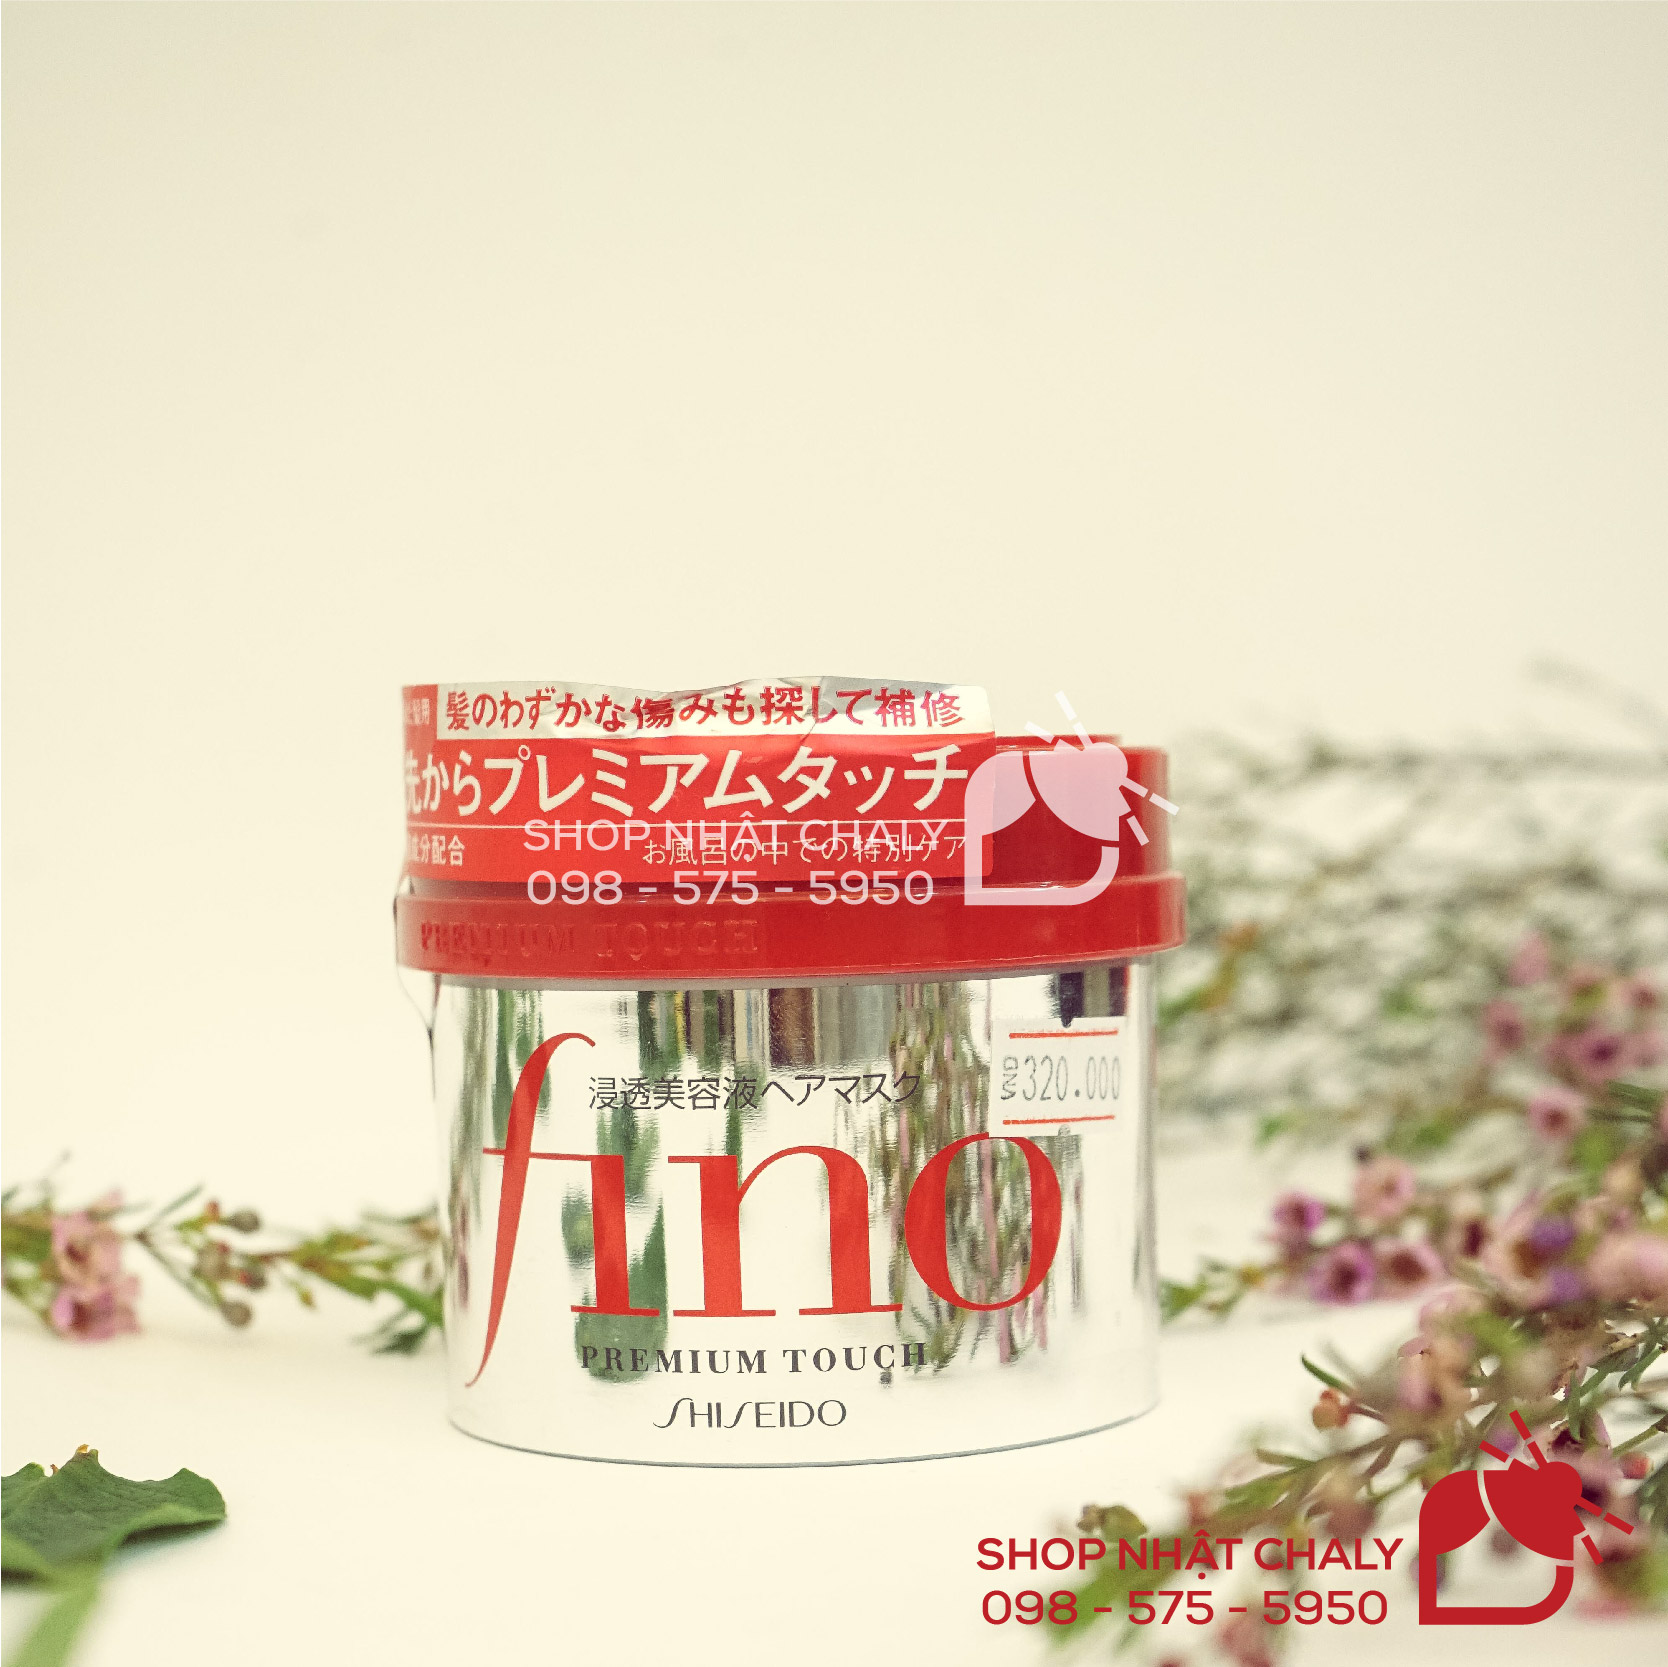 Là hũ kem ủ tóc Nhật Bản review cao nhất trên Cosme Ranking hiện nay, kem ủ tóc tốt nhất của Nhật Fino Shiseido giá lại khá bình dân, chắc chắn khiến chị em hài lòng với từng đồng xu bỏ ra để sở hữu em nó